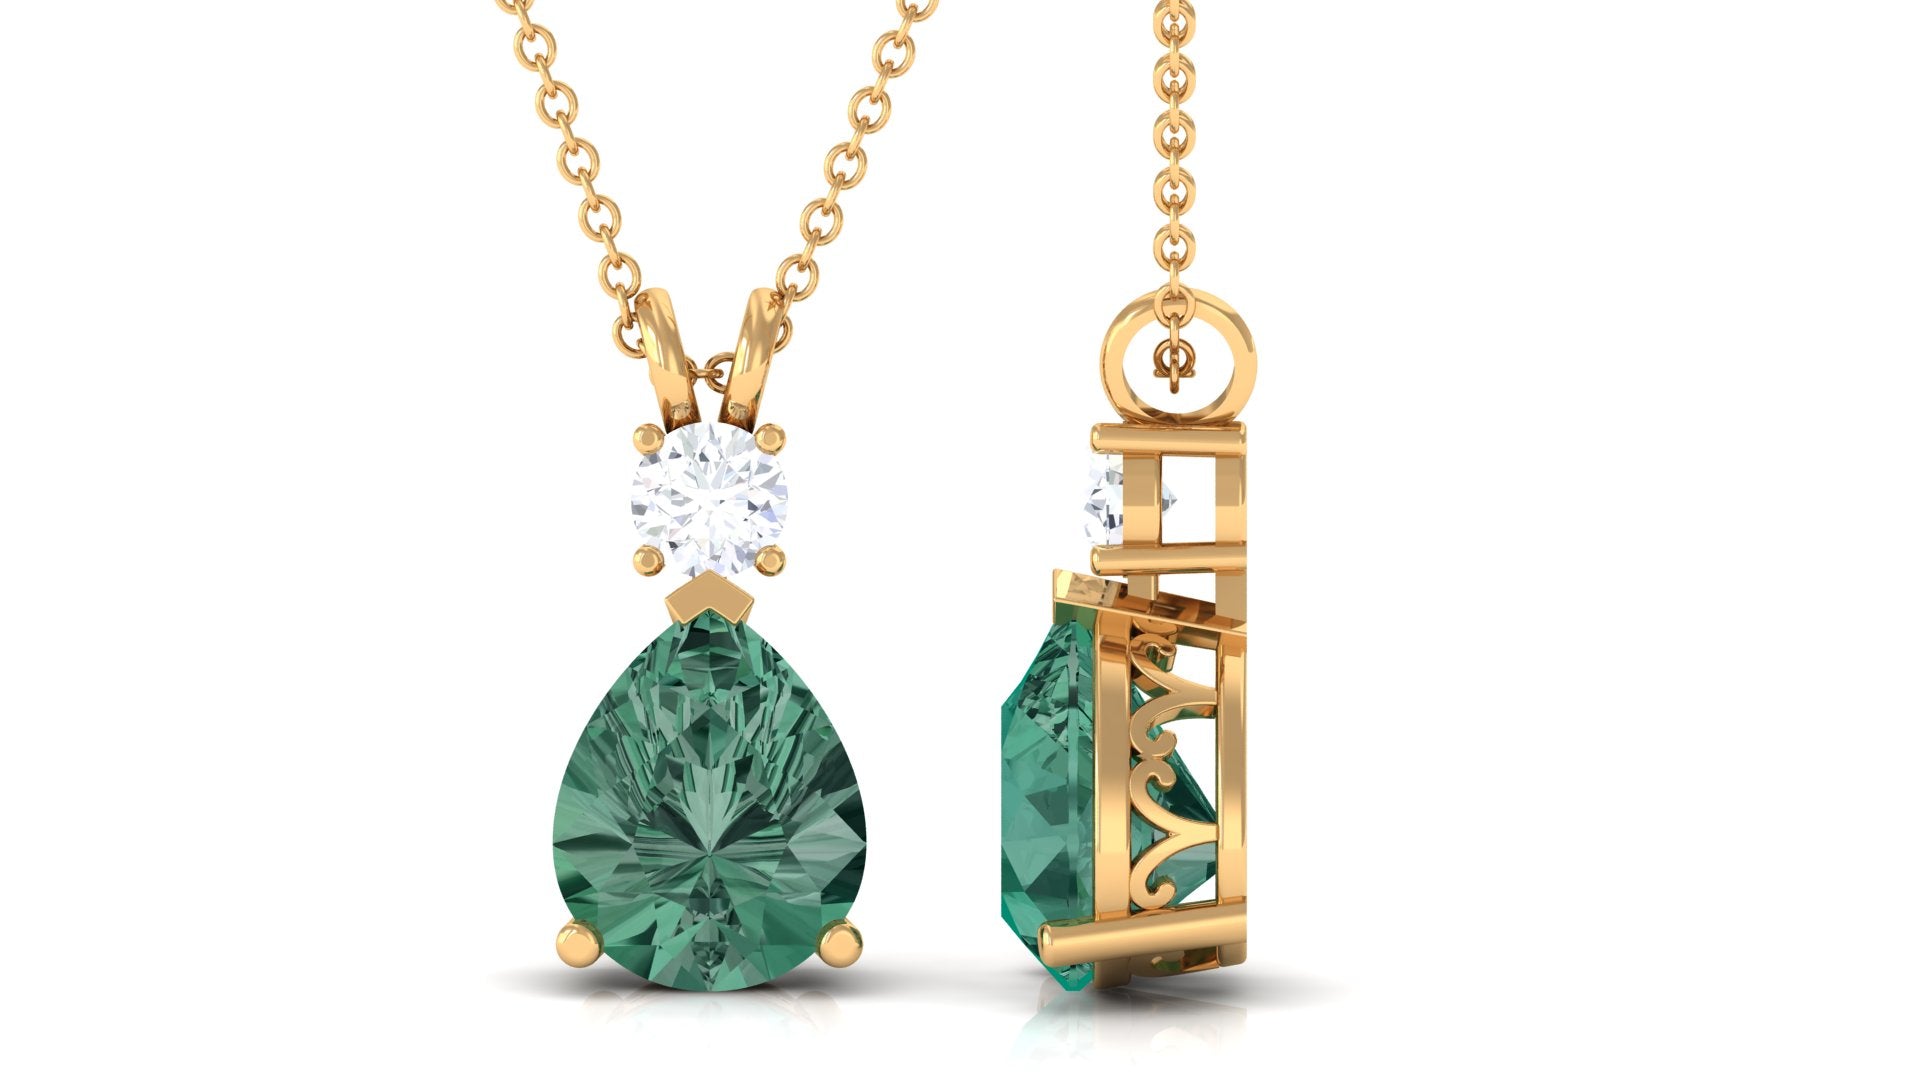 Pear Cut Created Green Sapphire Drop Pendant with Moissanite Lab Created Green Sapphire - ( AAAA ) - Quality - Rosec Jewels